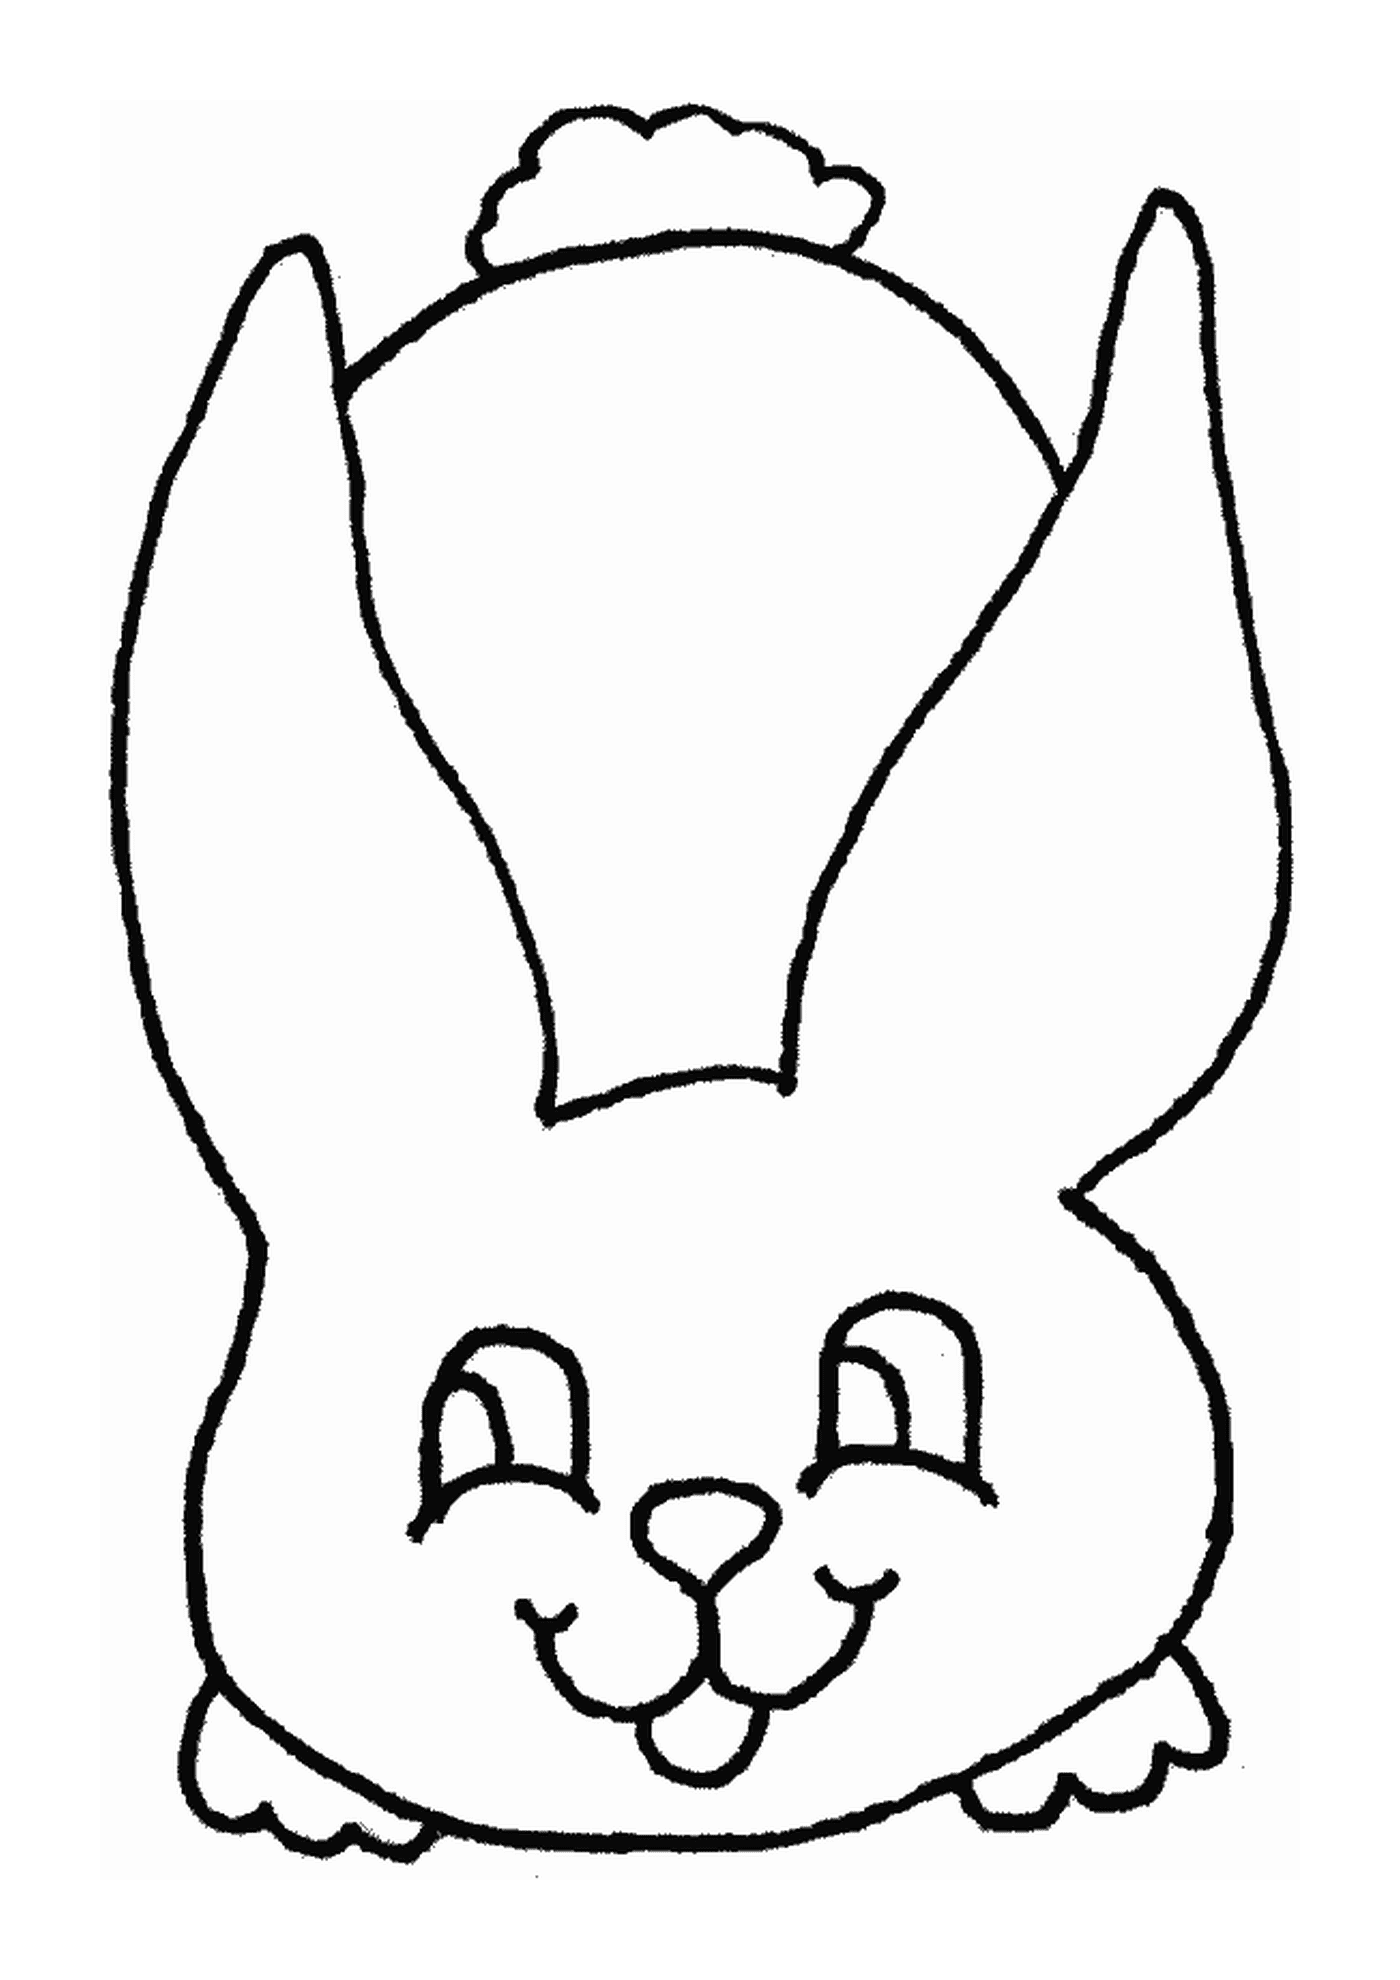  Coniglio disegnato dalla parte anteriore 